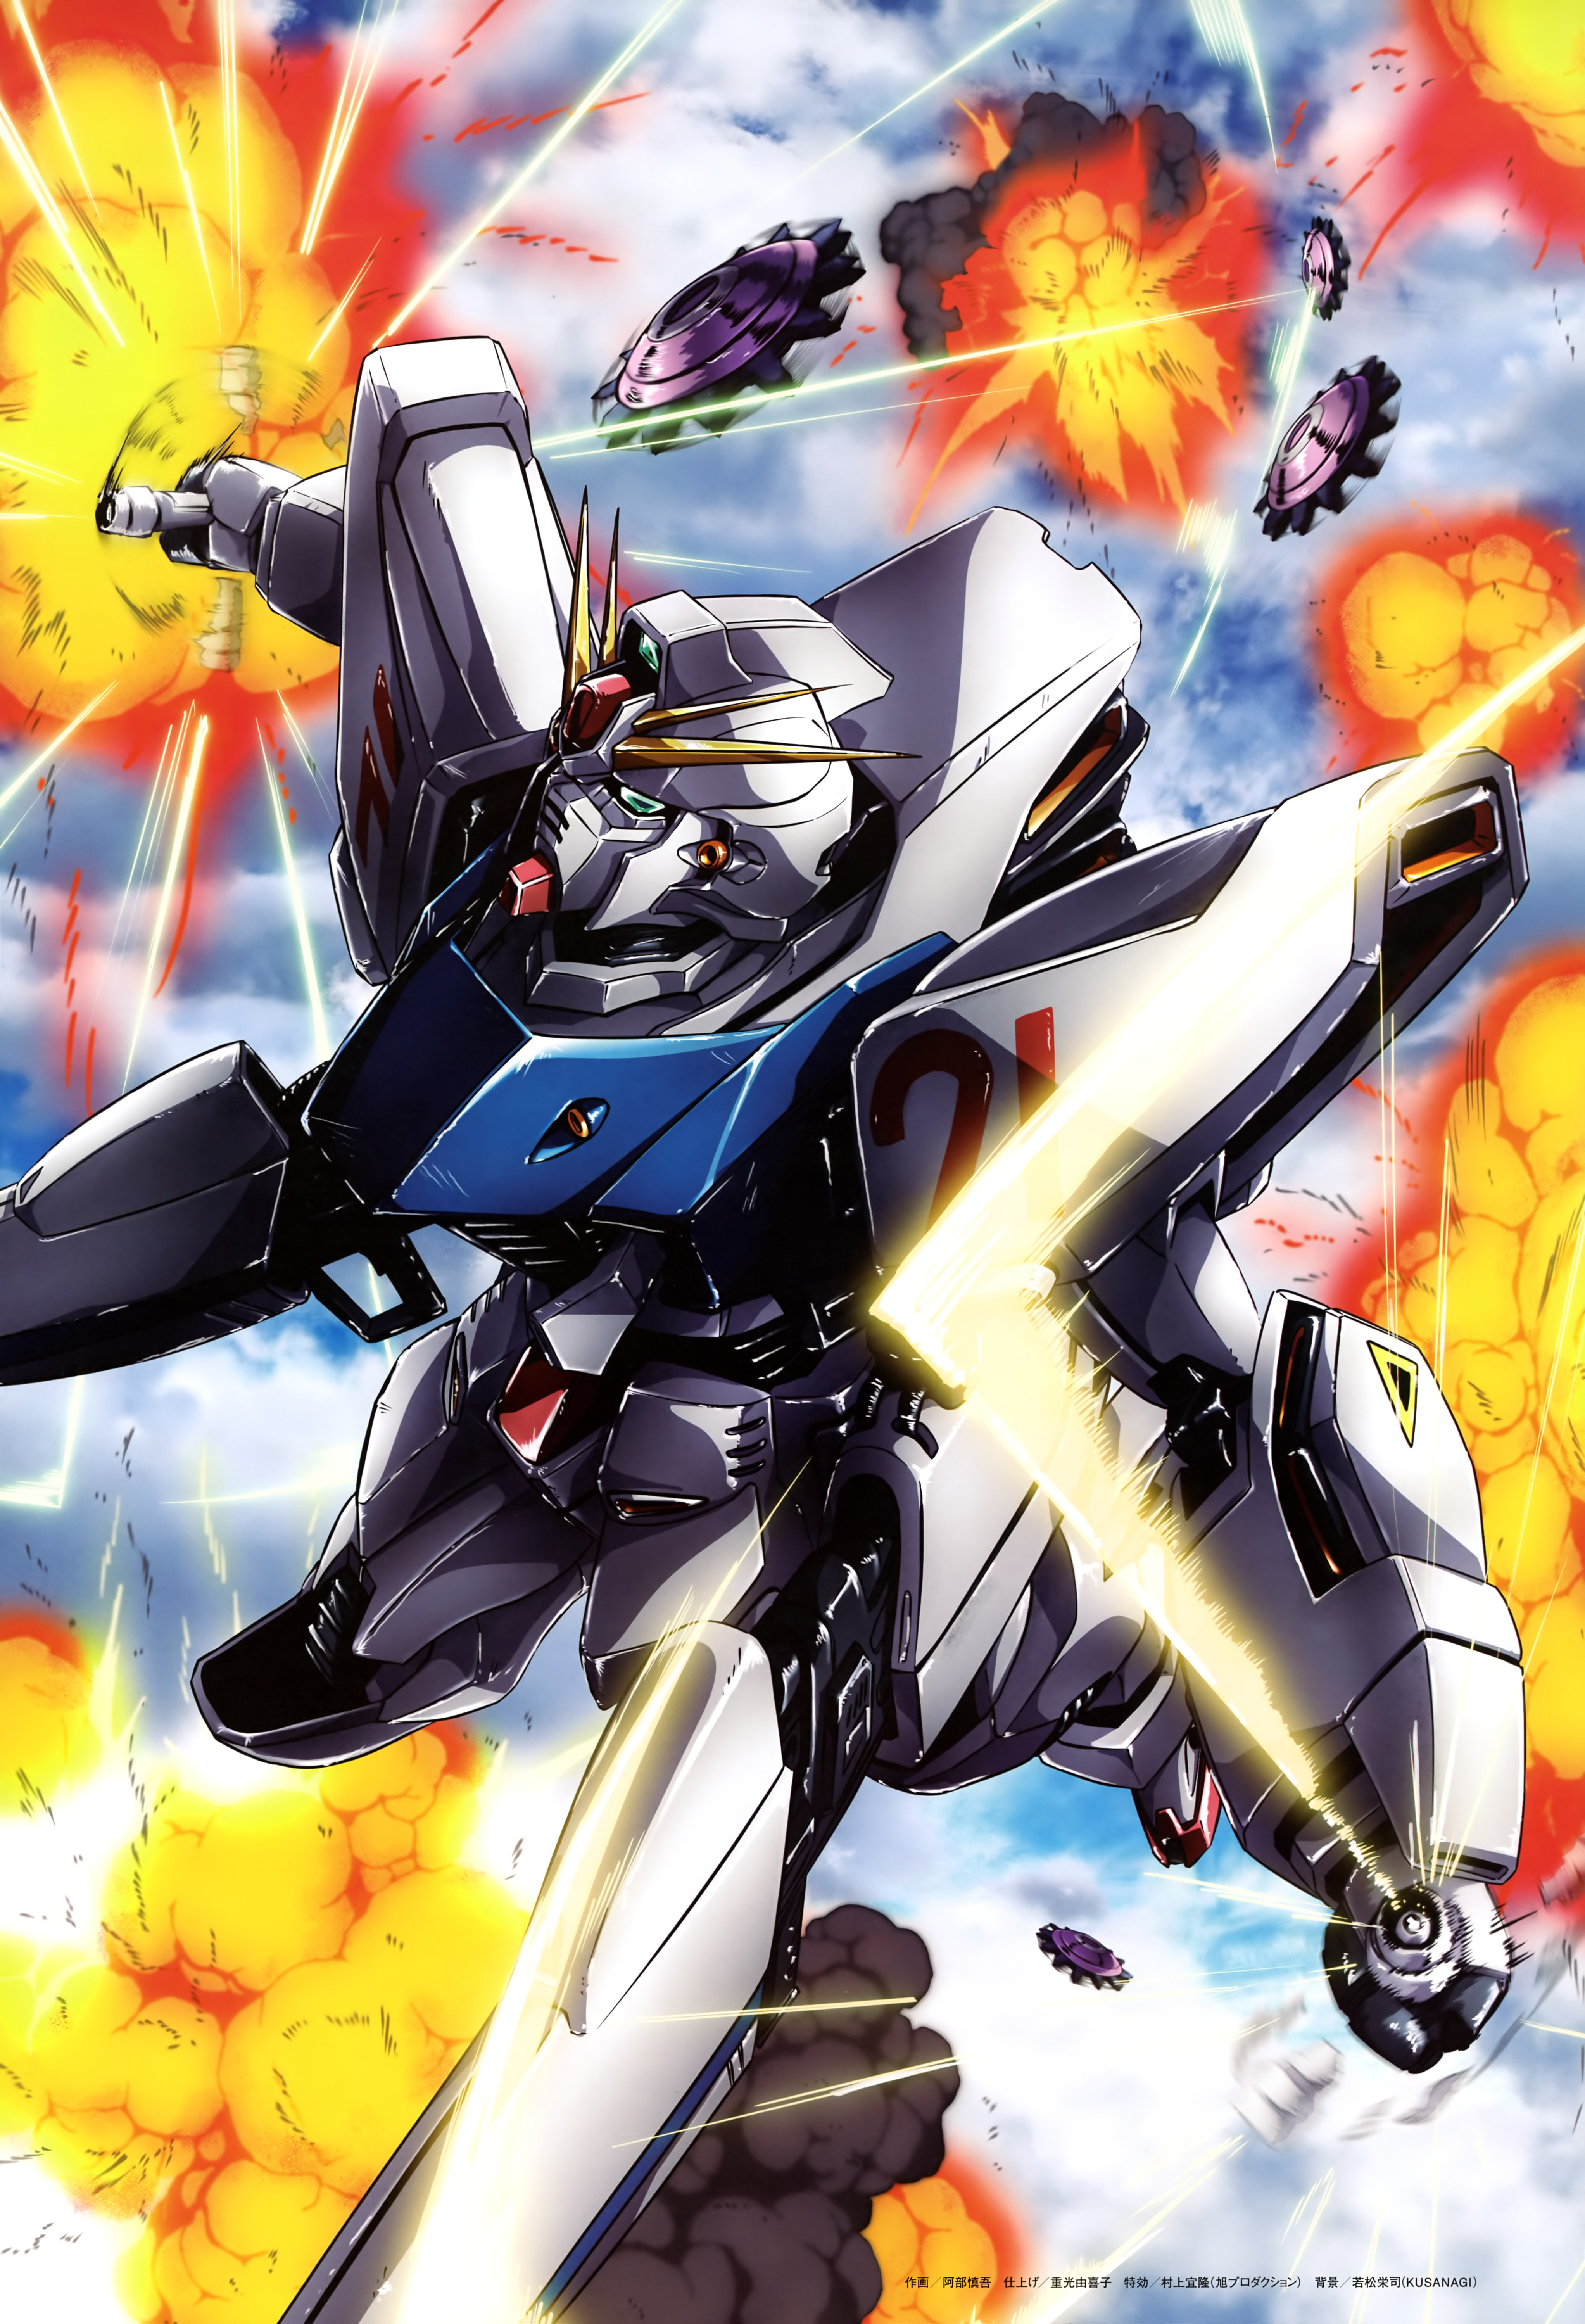 Anime 4088x5993 anime mechs Super Robot Taisen Mobile Suit Gundam F91 Gundam F91 Gundam artwork digital art fan art